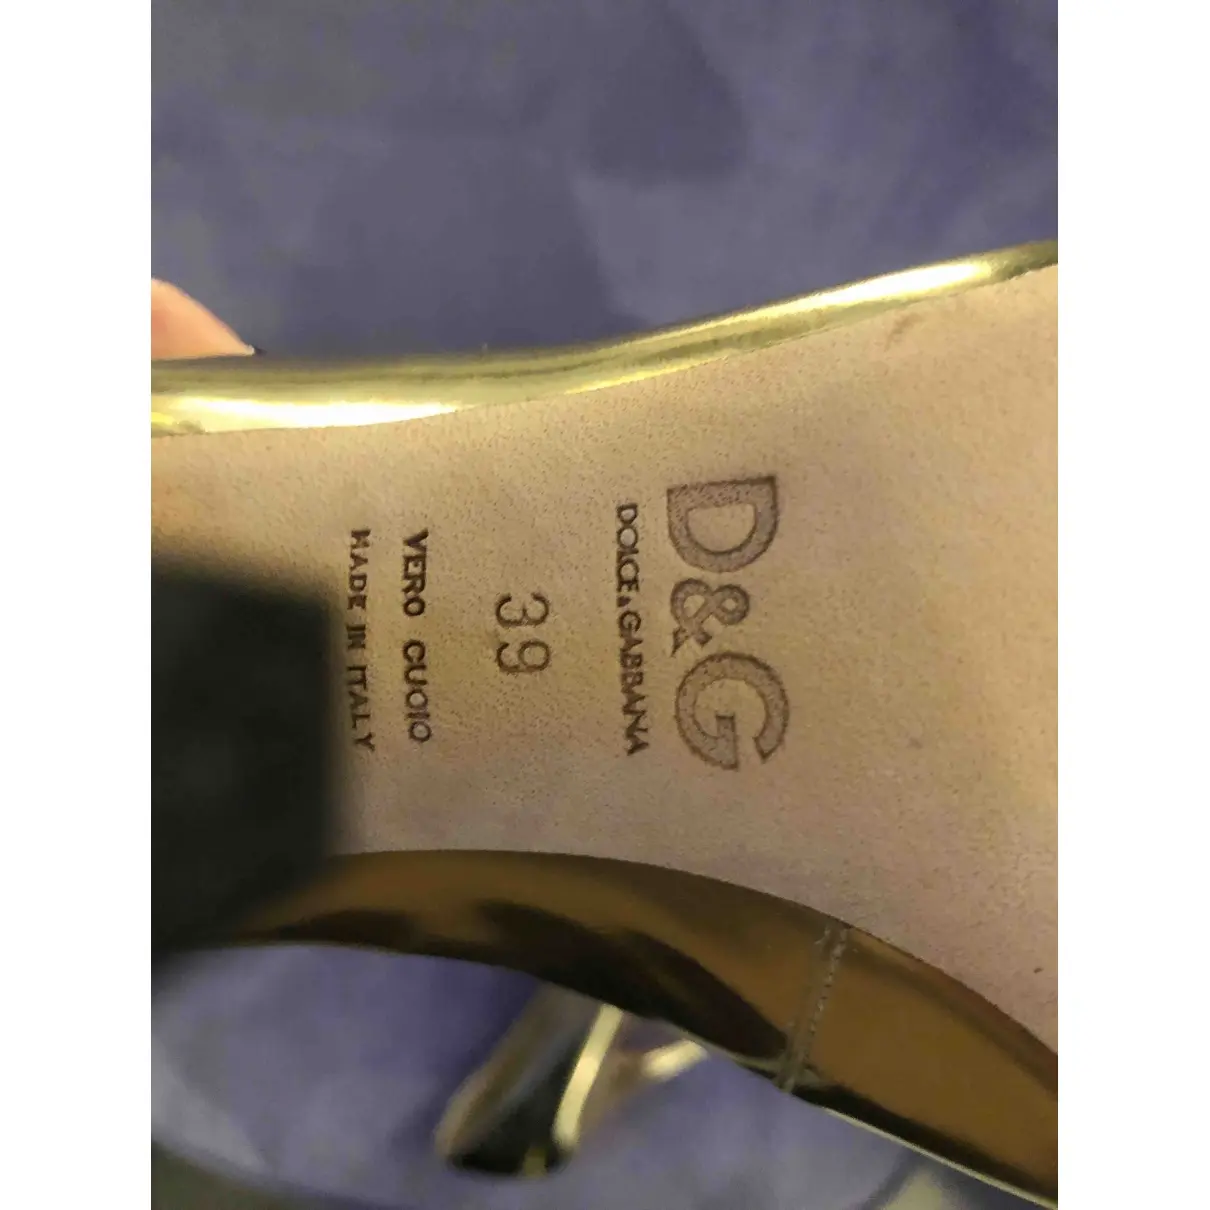 Buy D&G Leather heels online